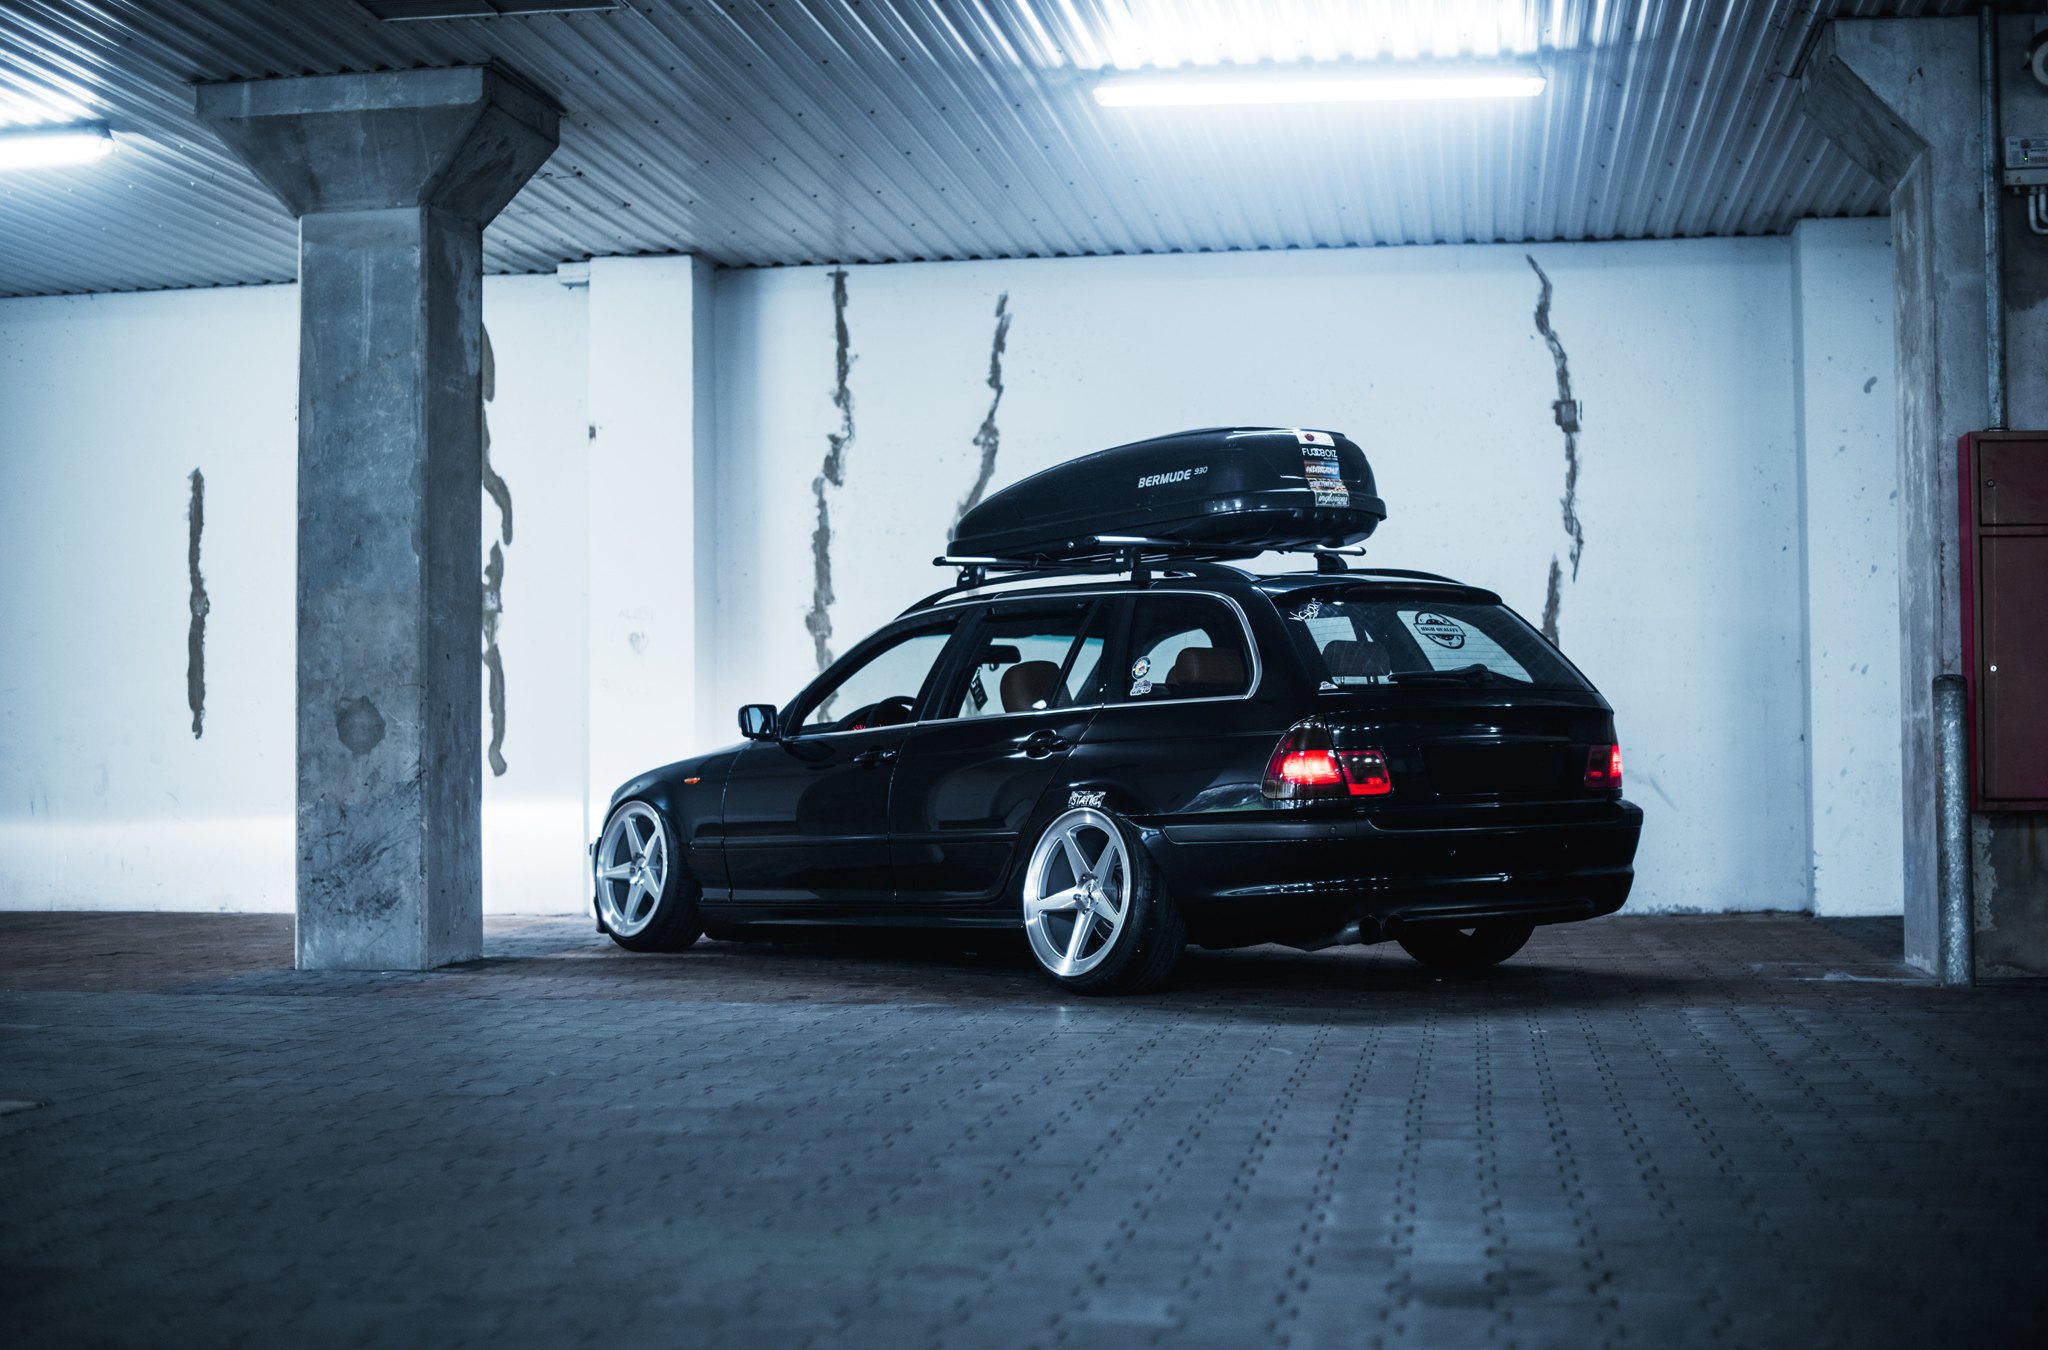 Roofline Spoiler on Black BMW 3-Series - Photo by JR Wheels